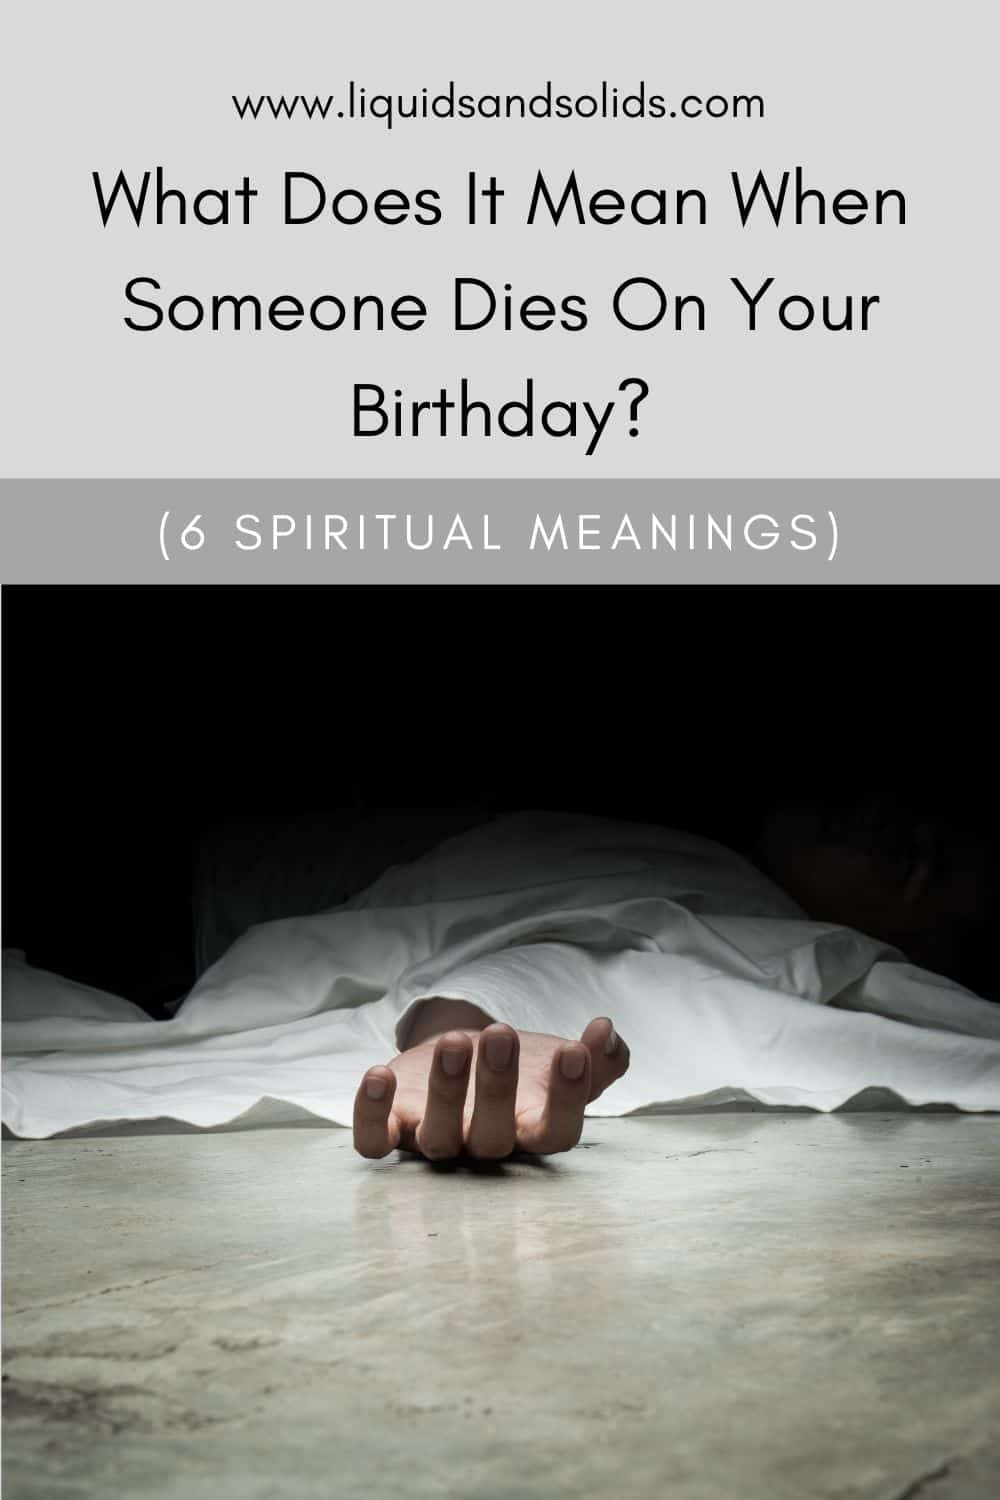  Mida tähendab see, kui keegi sureb sinu sünnipäeval? (6 vaimset tähendust)